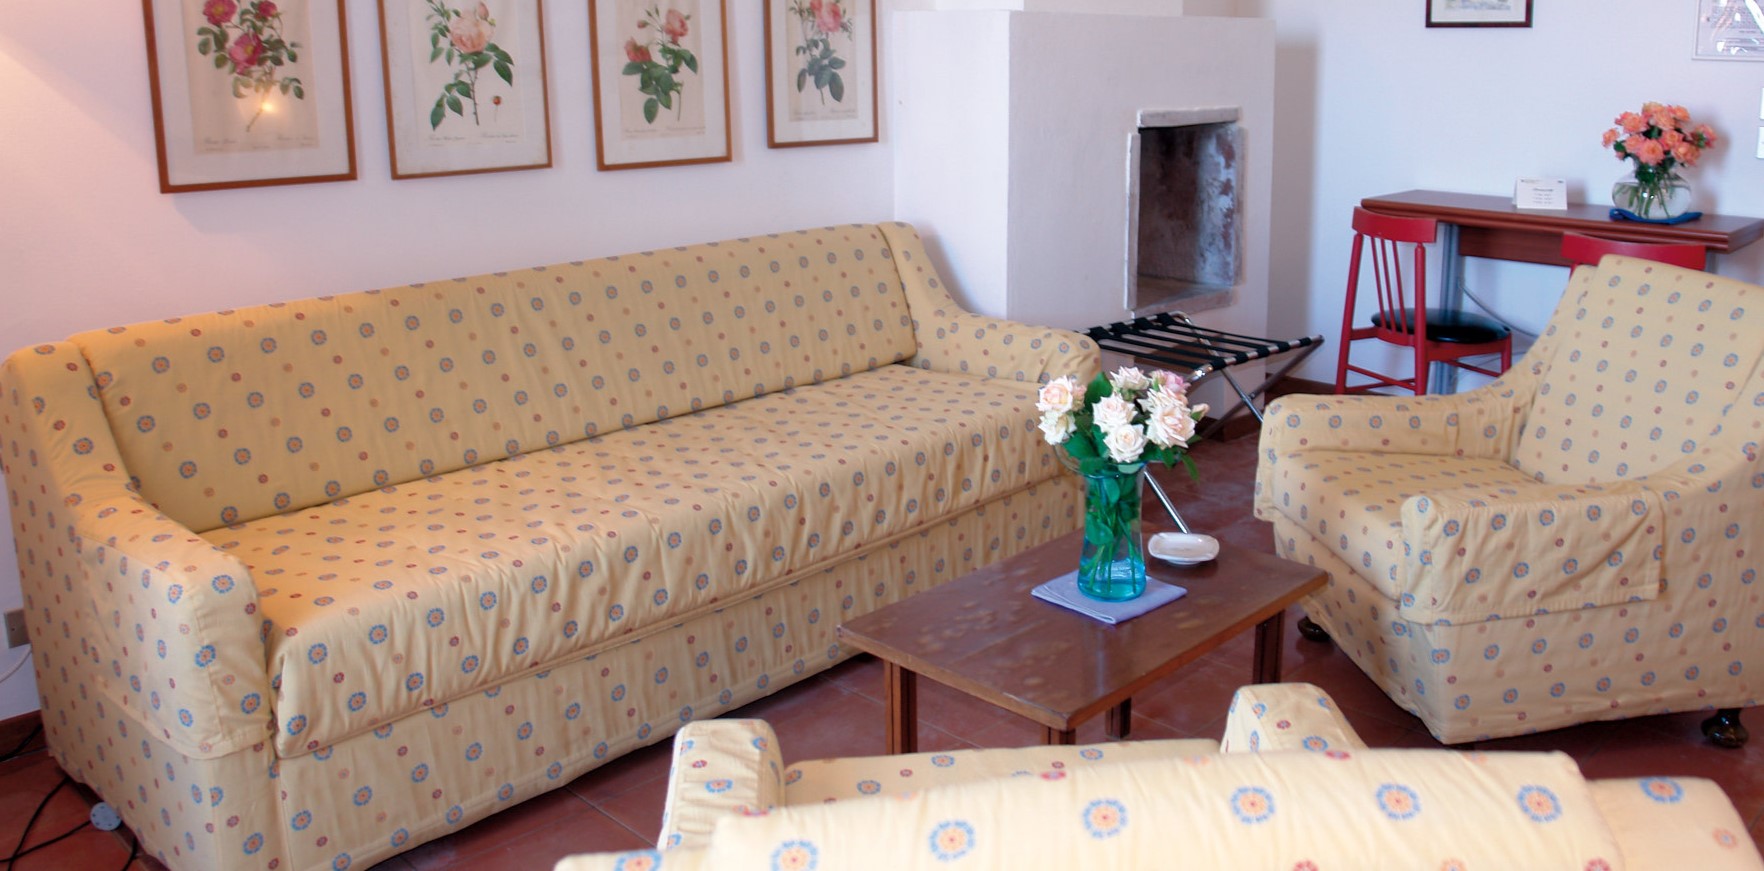 Под цвет обивки дивана можно подобрать несколько удобных кресел